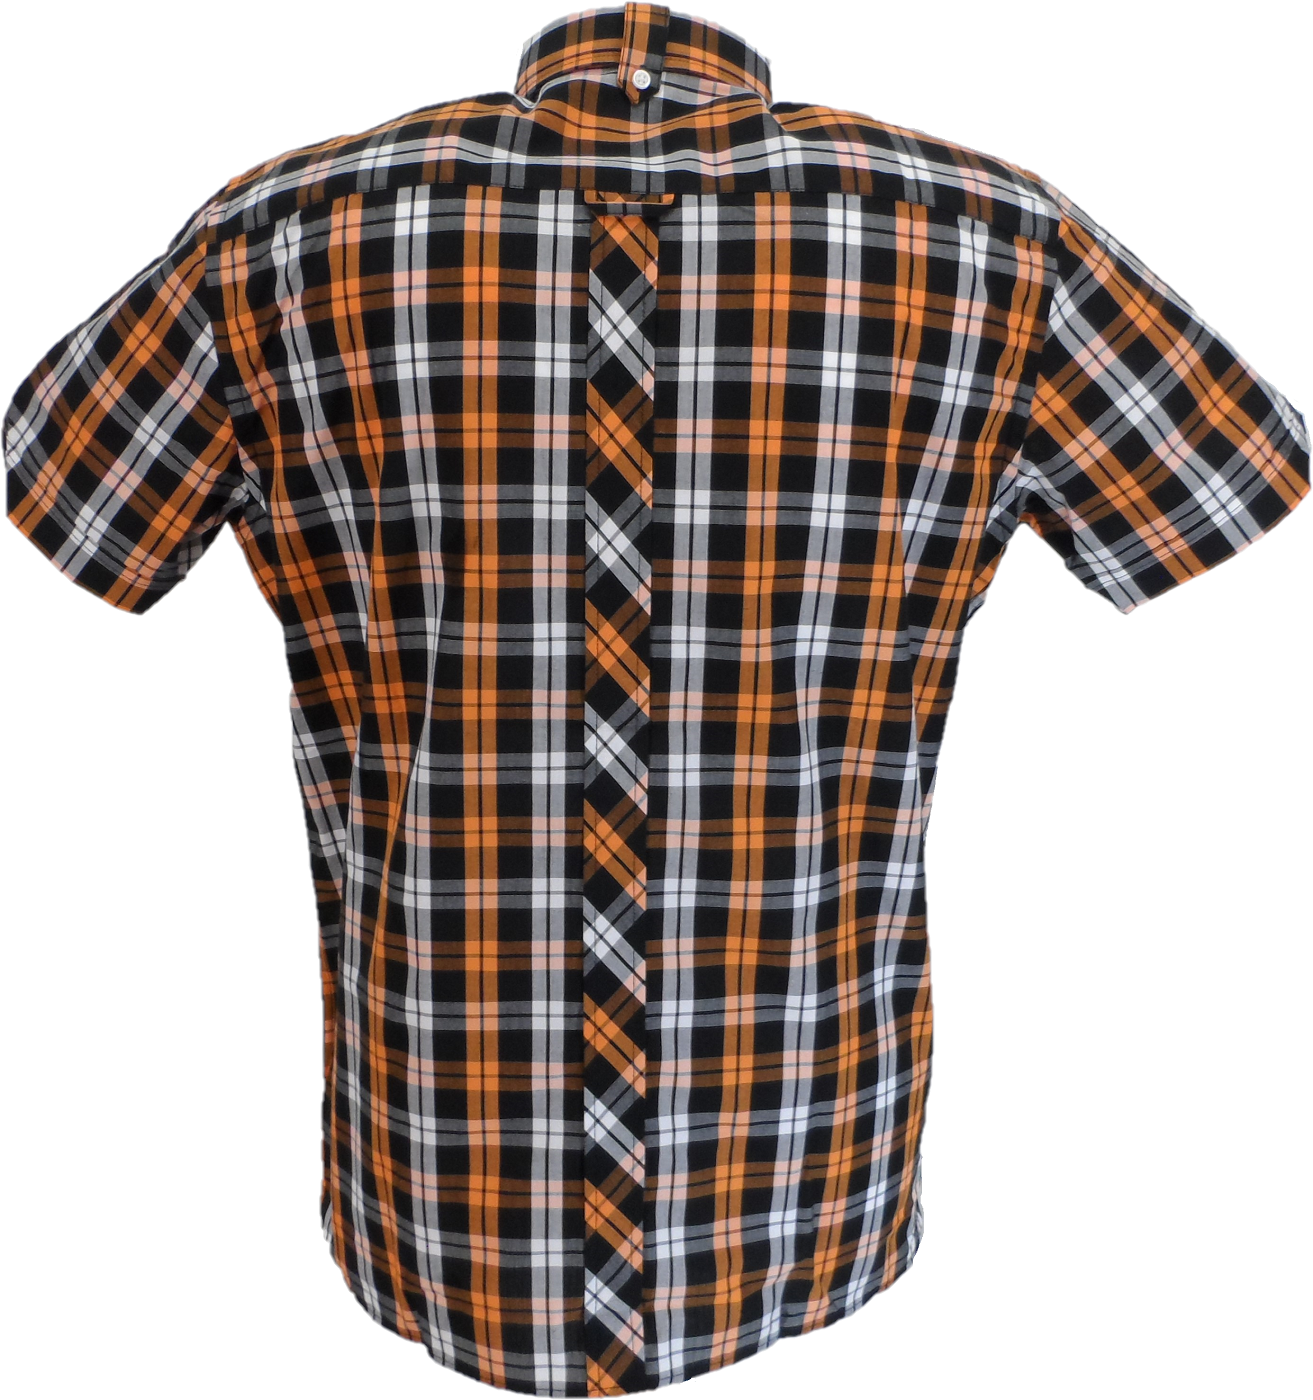 Trojanメンズ ブラック/オレンジ/ホワイト チェック半袖シャツとポケット チーフ